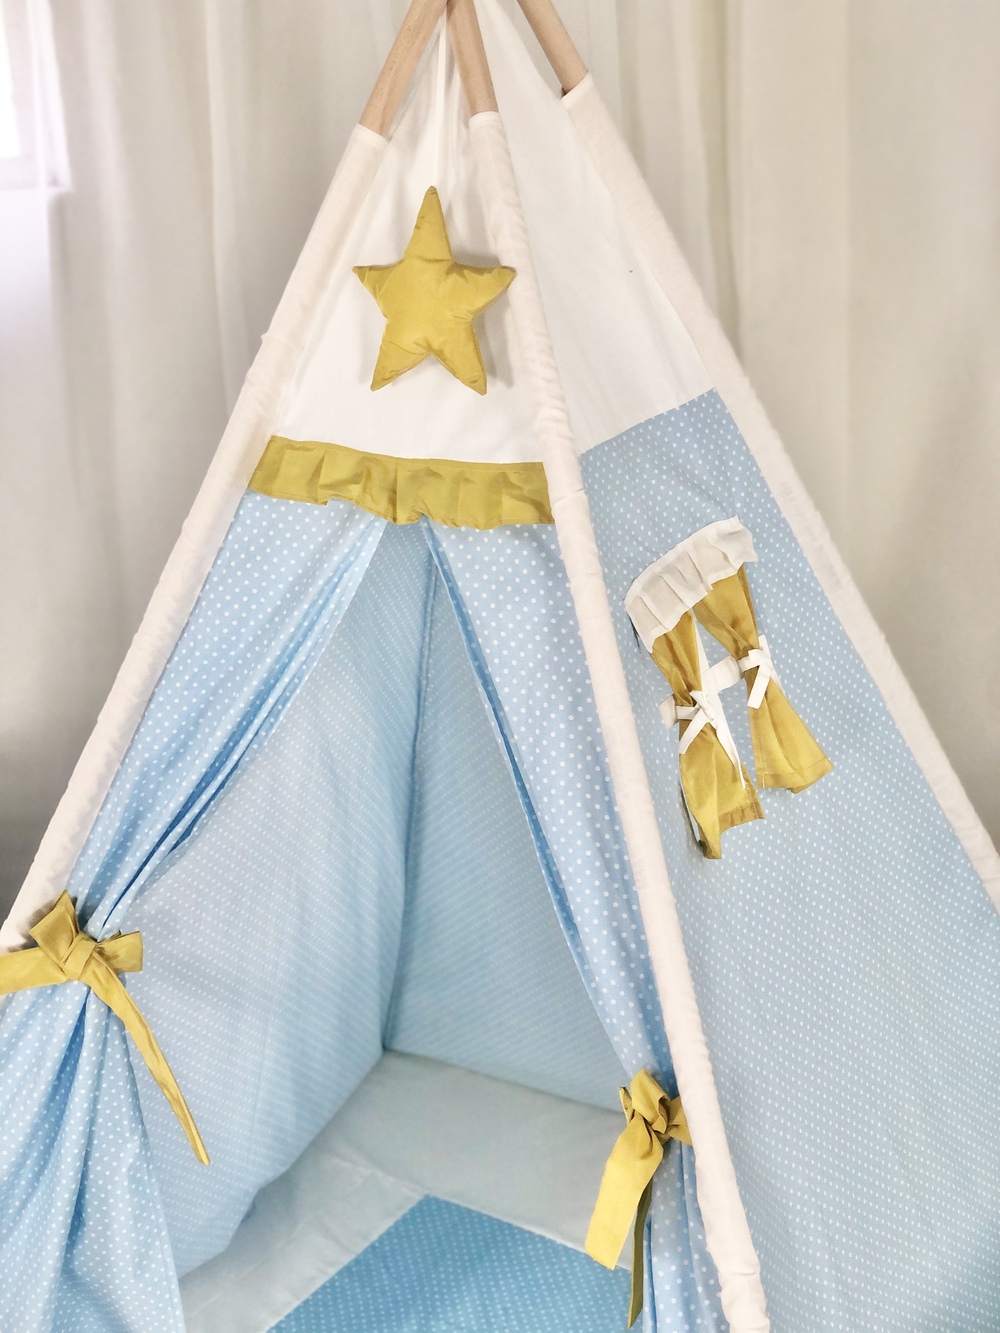 Παιδική Σκηνή - teepee tent Baby Blue